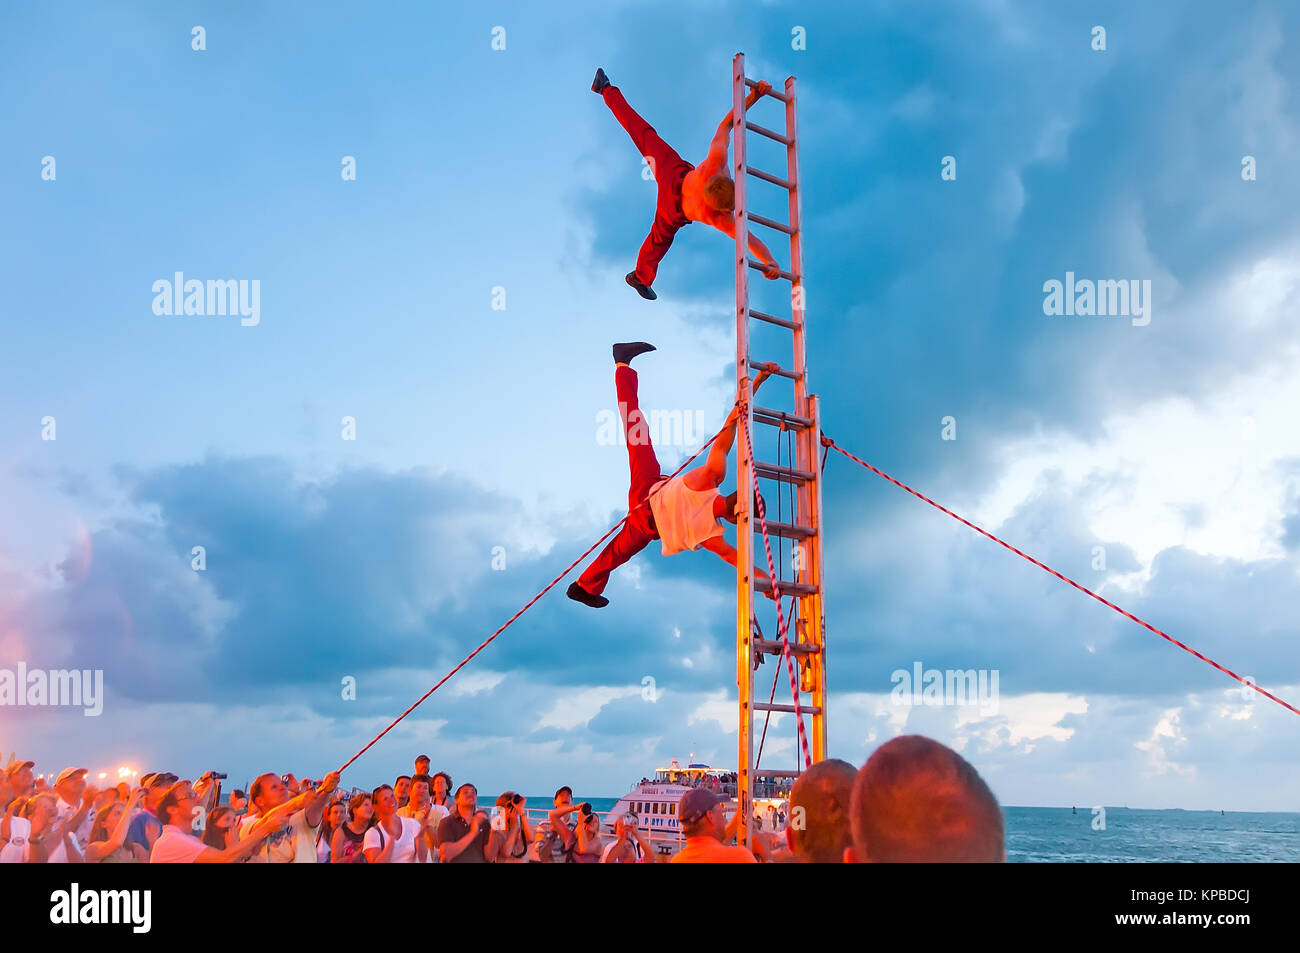 Akrobaten auf Leiter durchführen, vertikaler Ständer bei Sonnenuntergang Feier Key West Florida Stockfoto